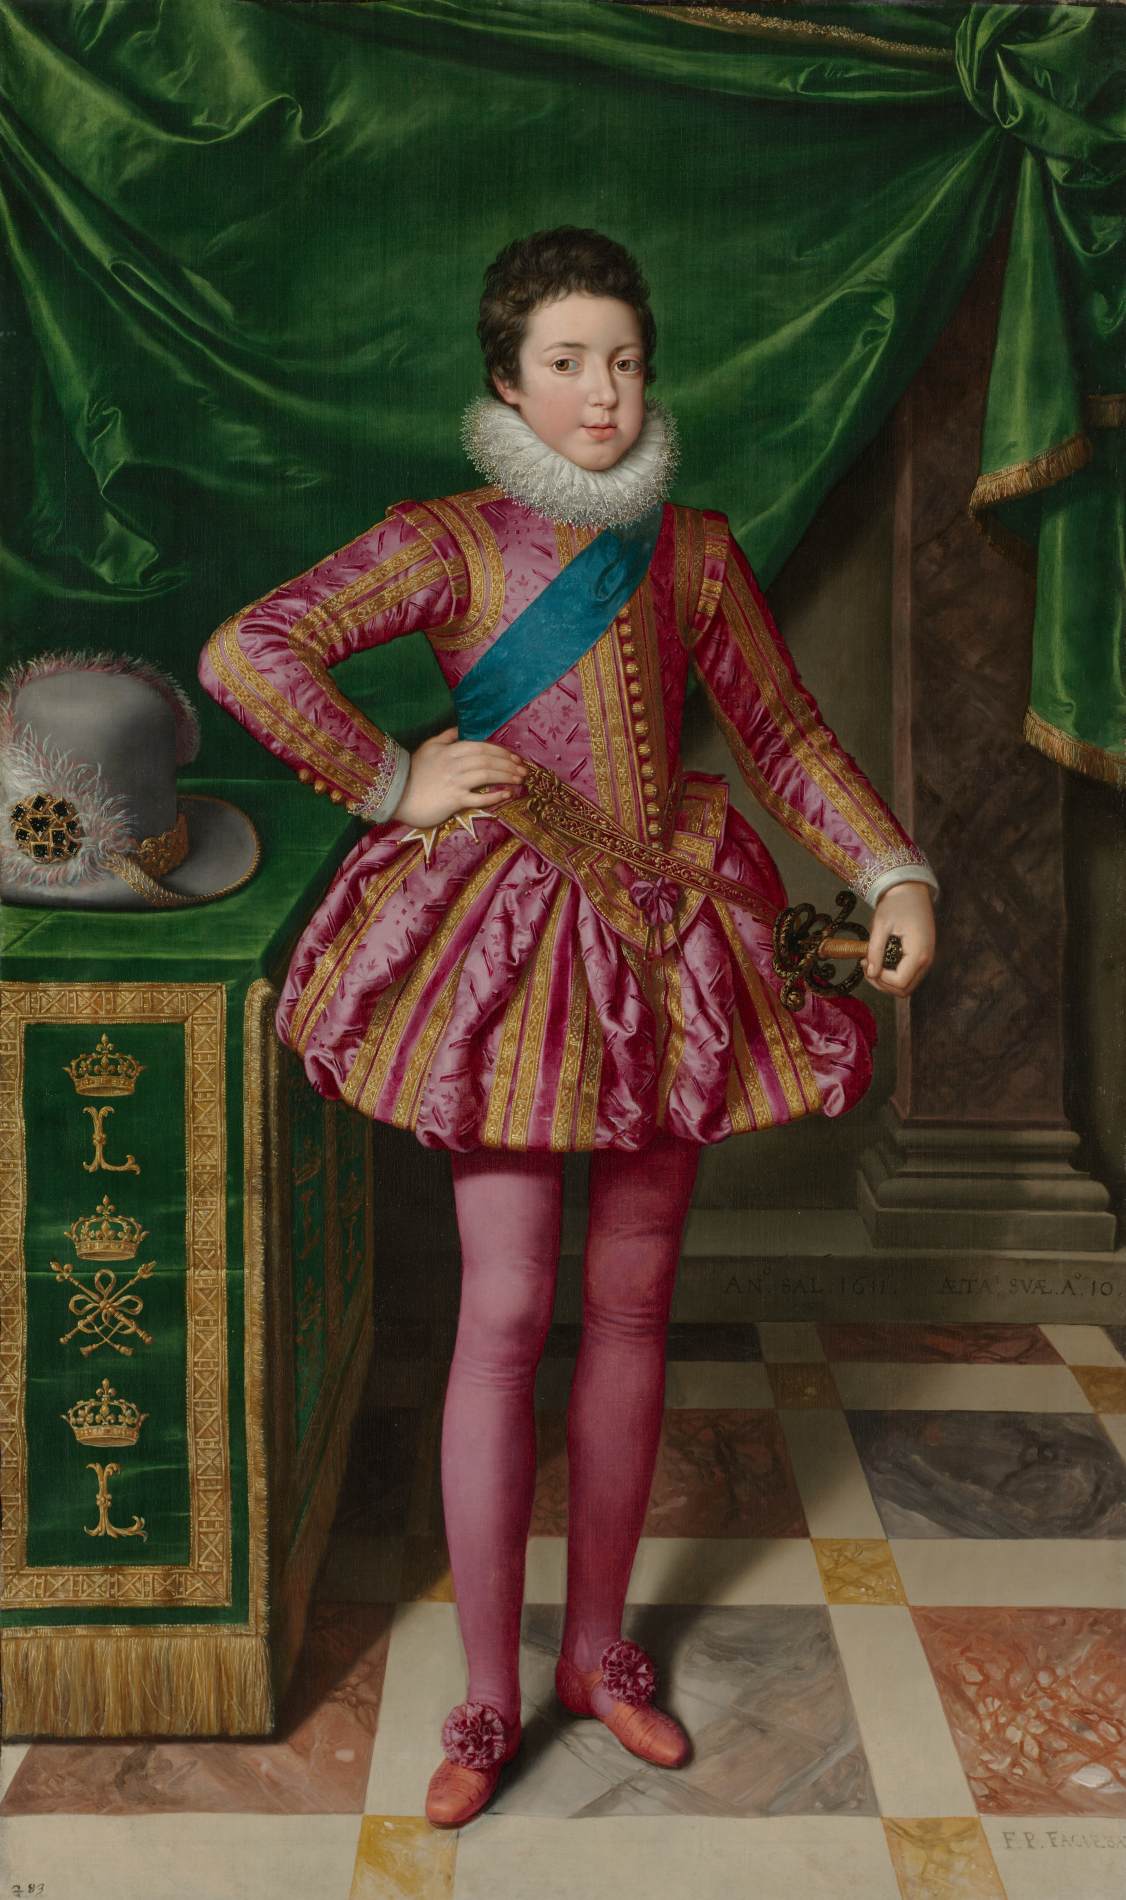 Louis XIII, kiedy byłem dzieckiem